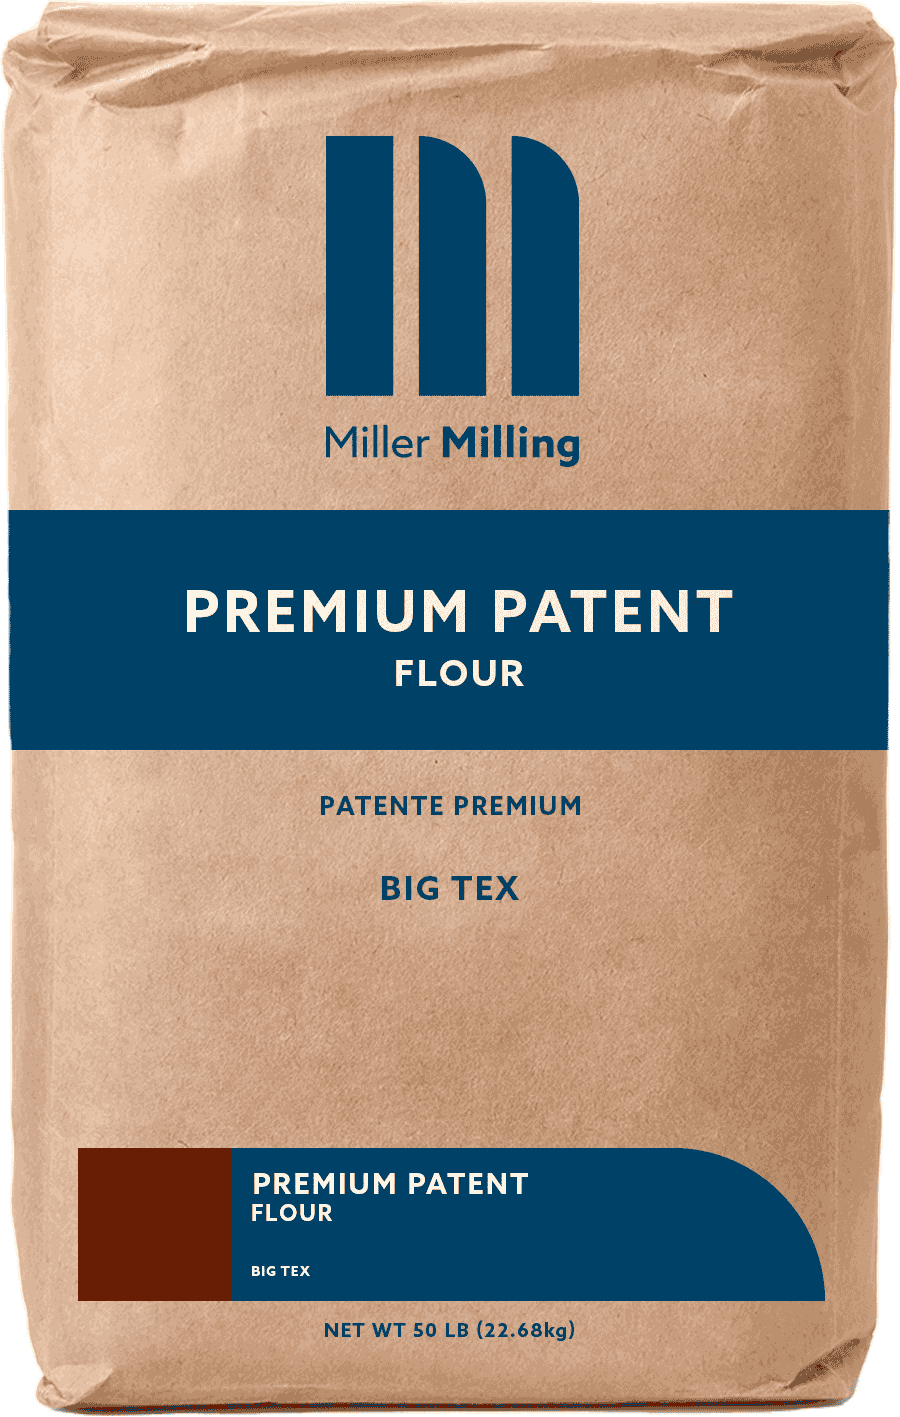 Premium Patent Big Tex flour